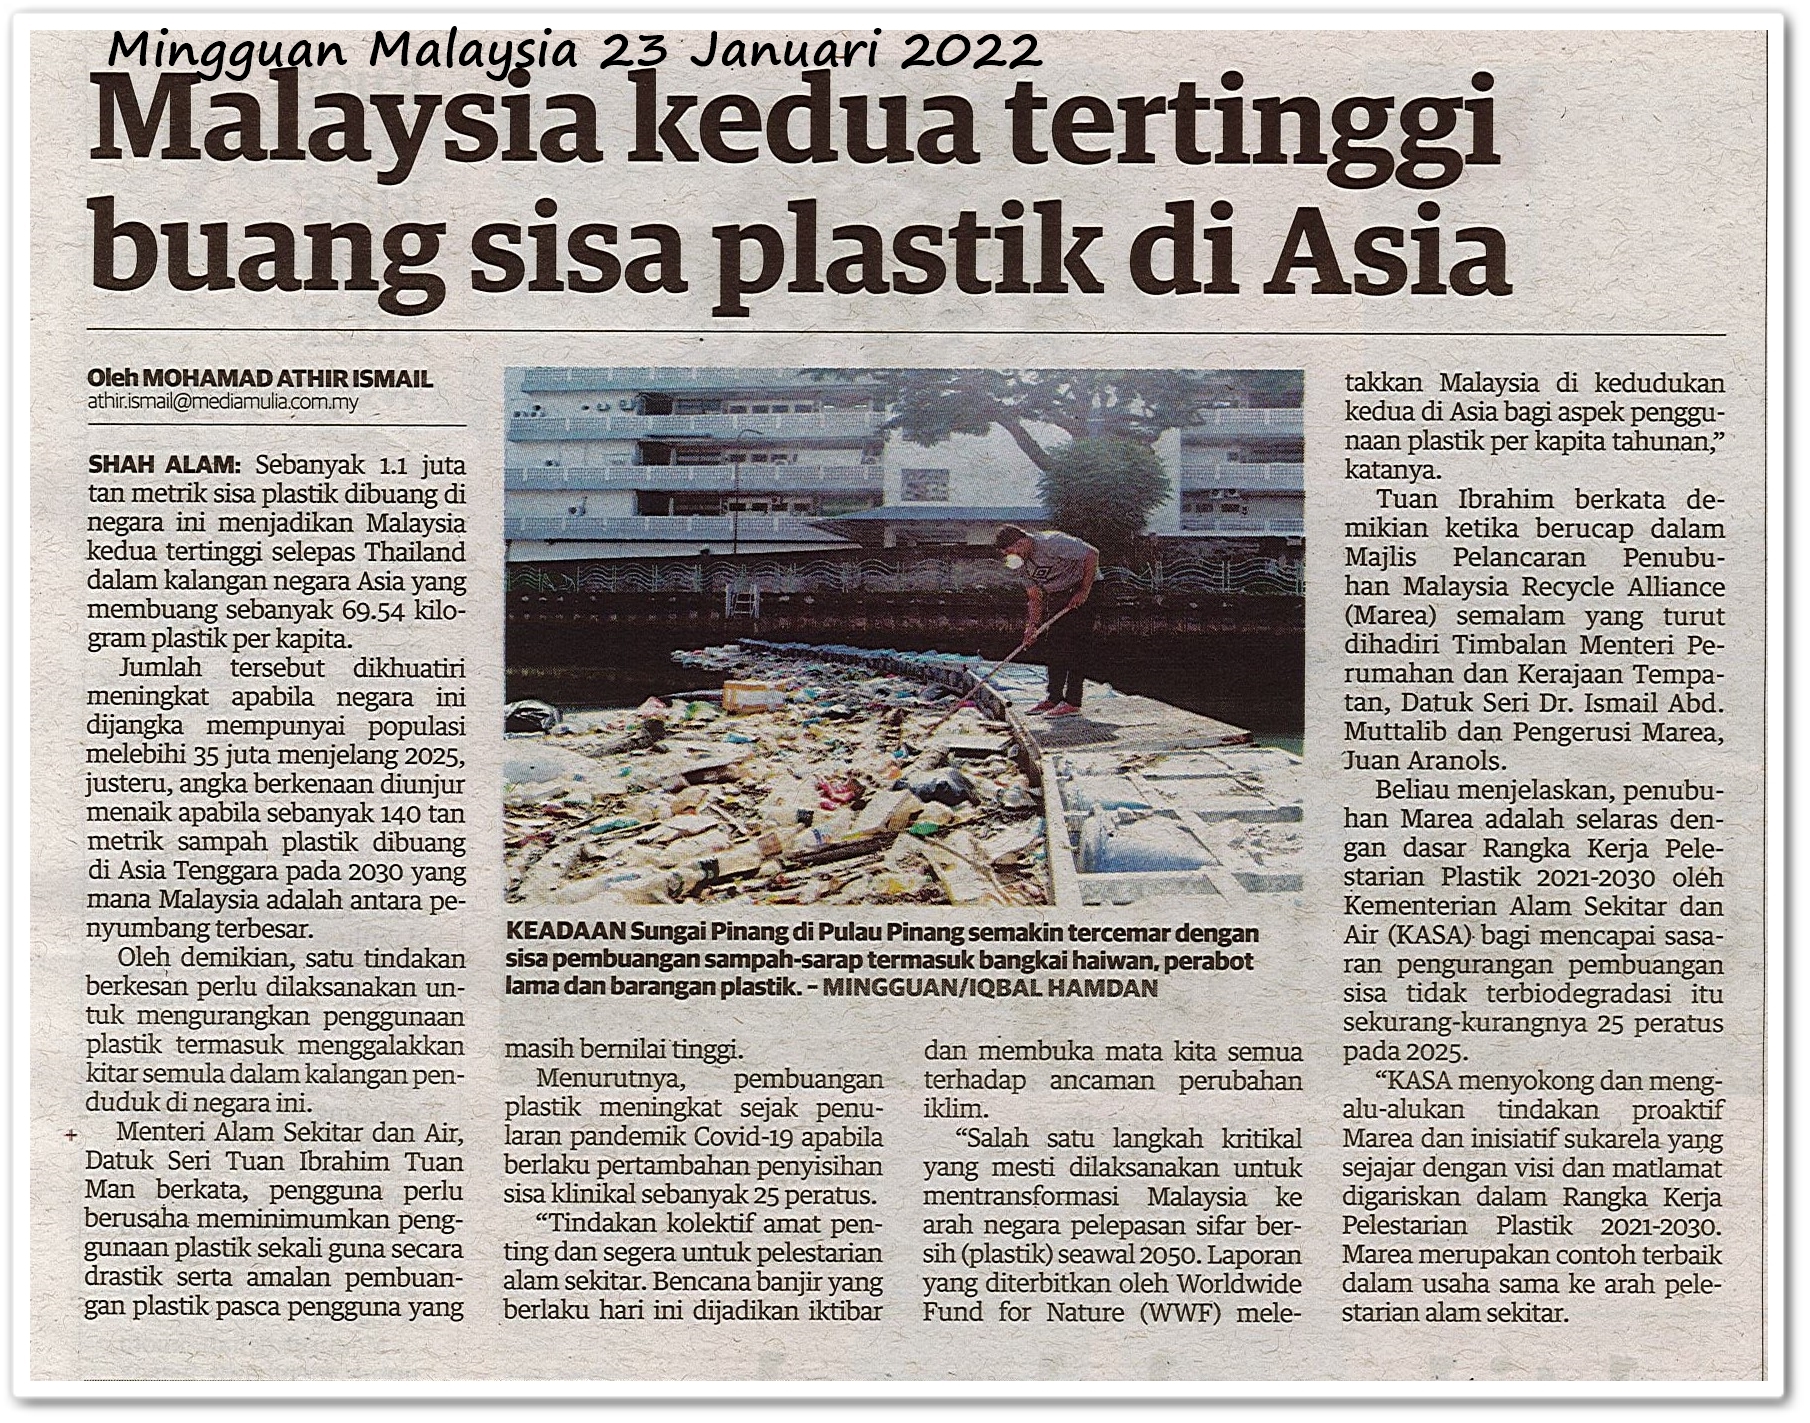 Malaysia kedua tertinggi buang sisa plastik di Asia - Keratan akhbar Mingguan Malaysia 23 Januari 2022